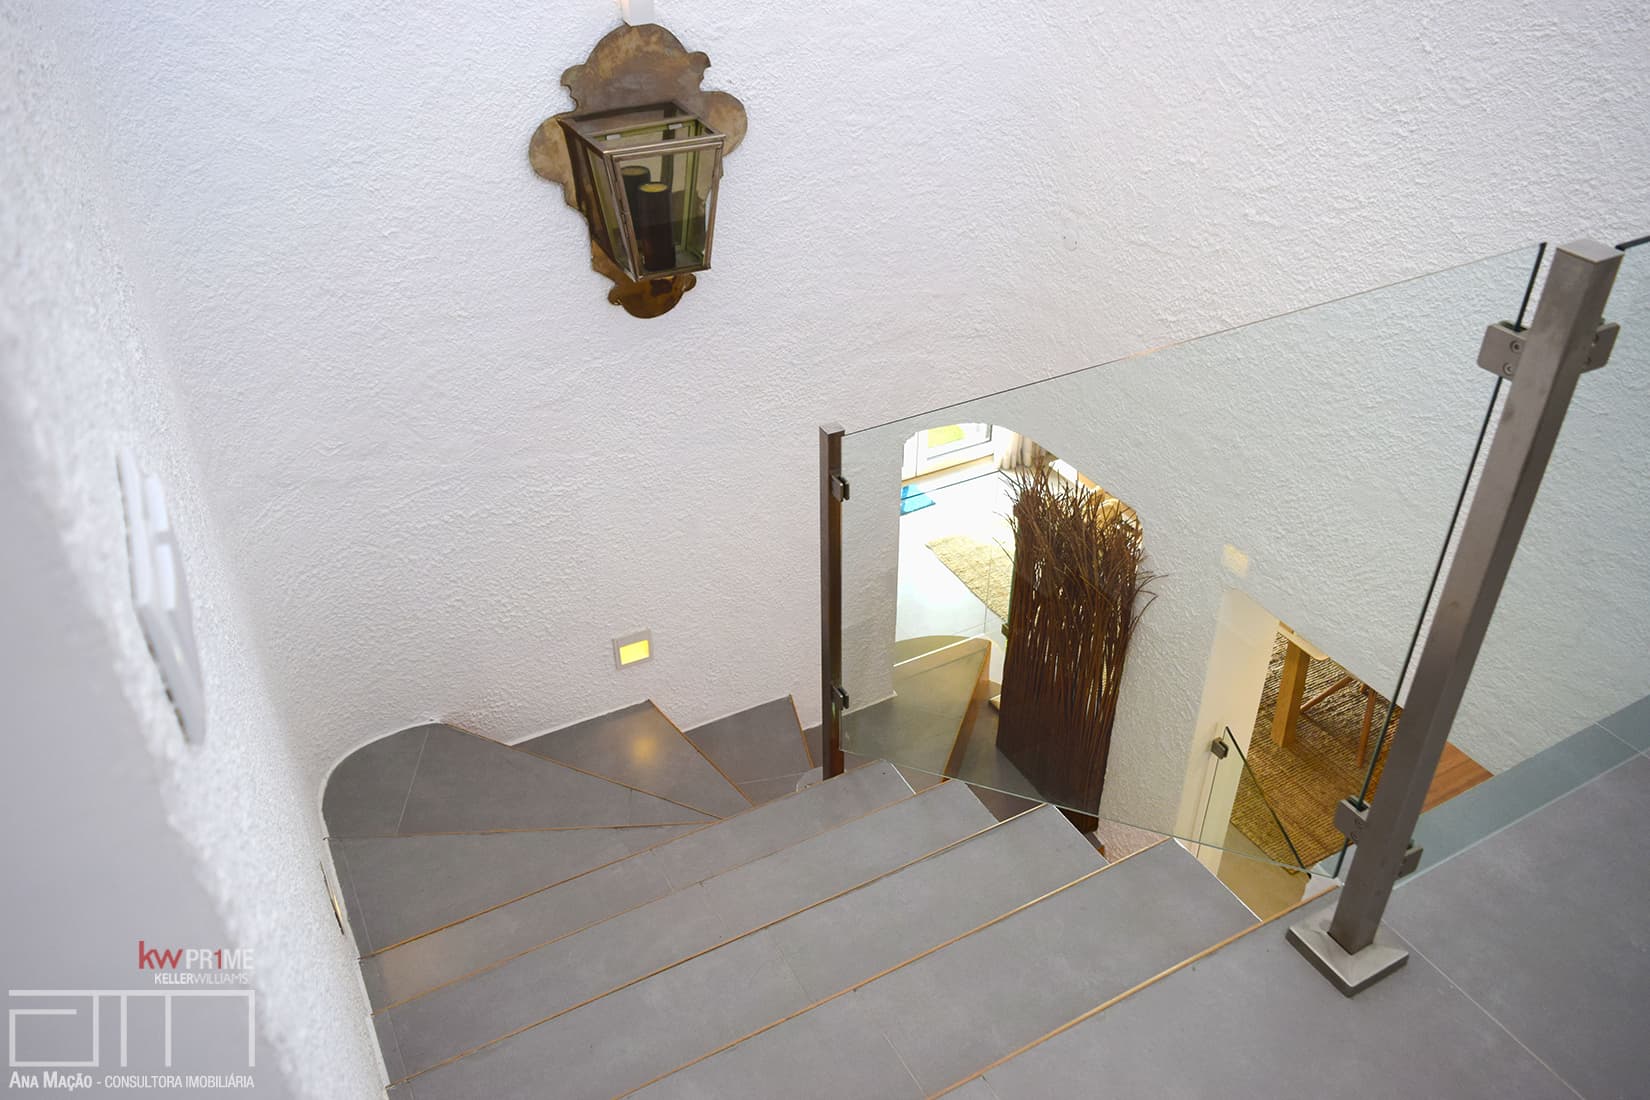 Vue de l'escalier de liaison entre les deux étages